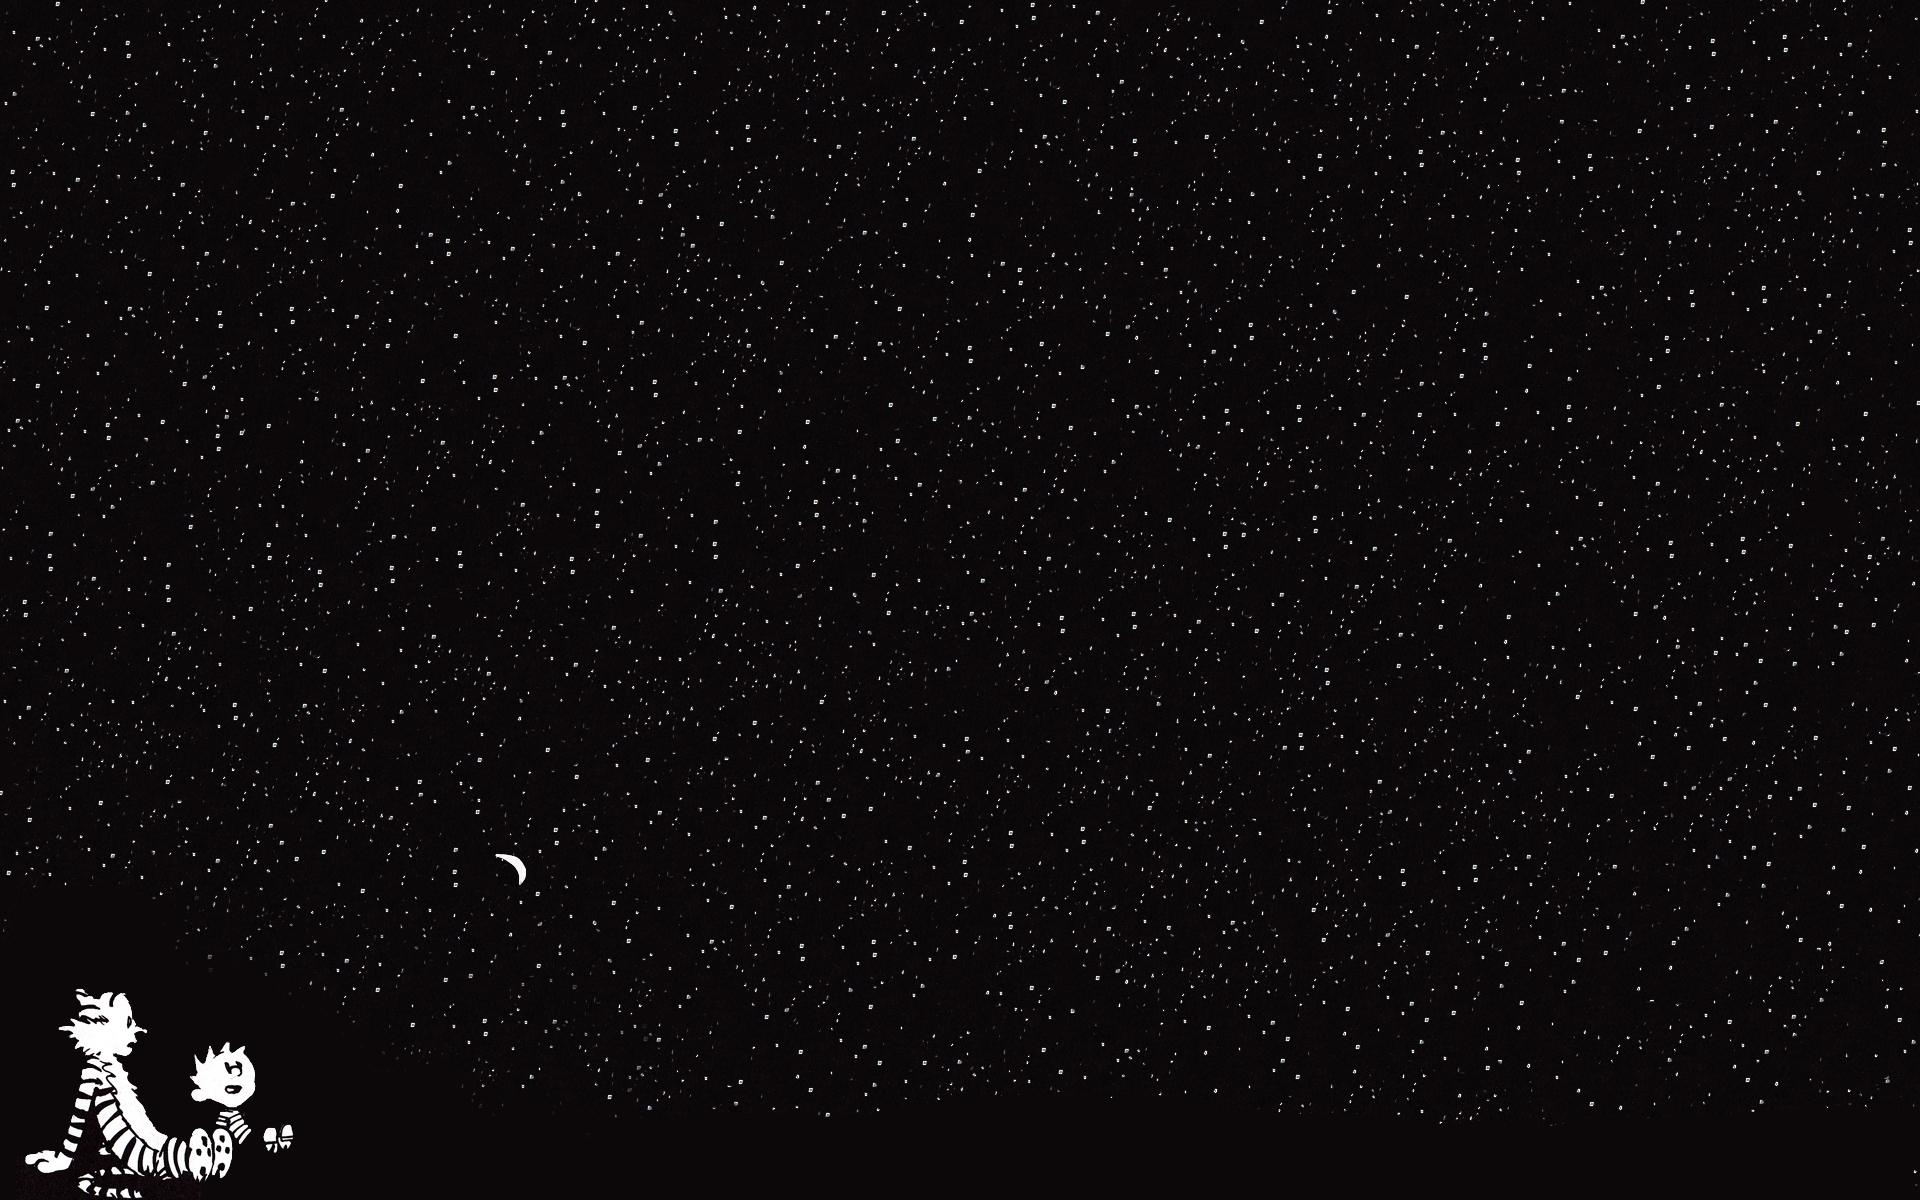 Картинки Кальвина и Гоббса, звездное небо, мультфильм фото и обои на рабочий стол